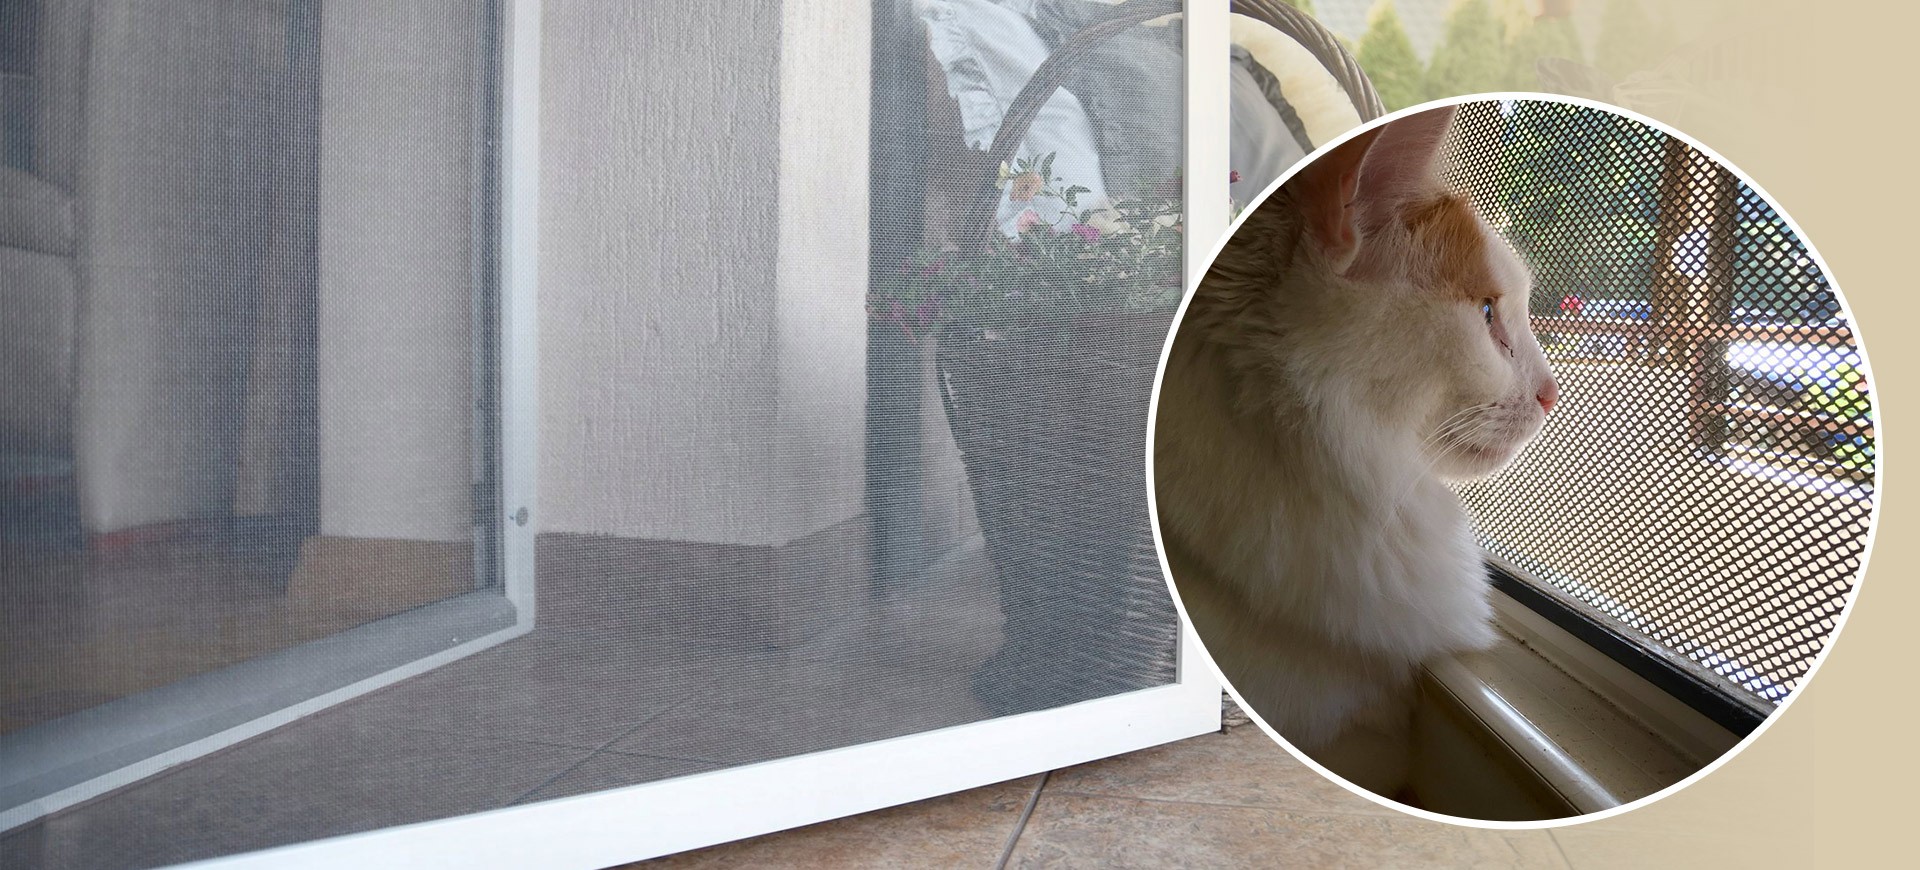 Kedi Sinekliği ile Pencereler, Balkonlar Güvende